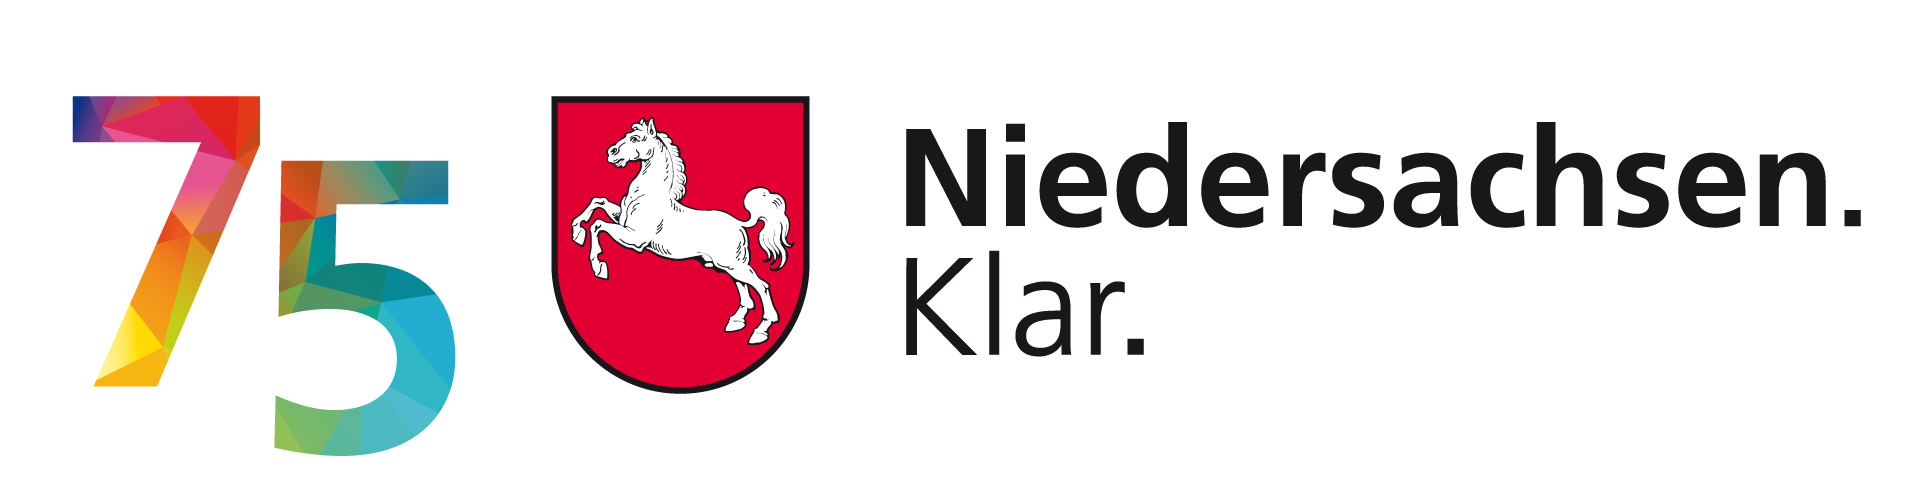 75 Jahre Niedersachsen Logo